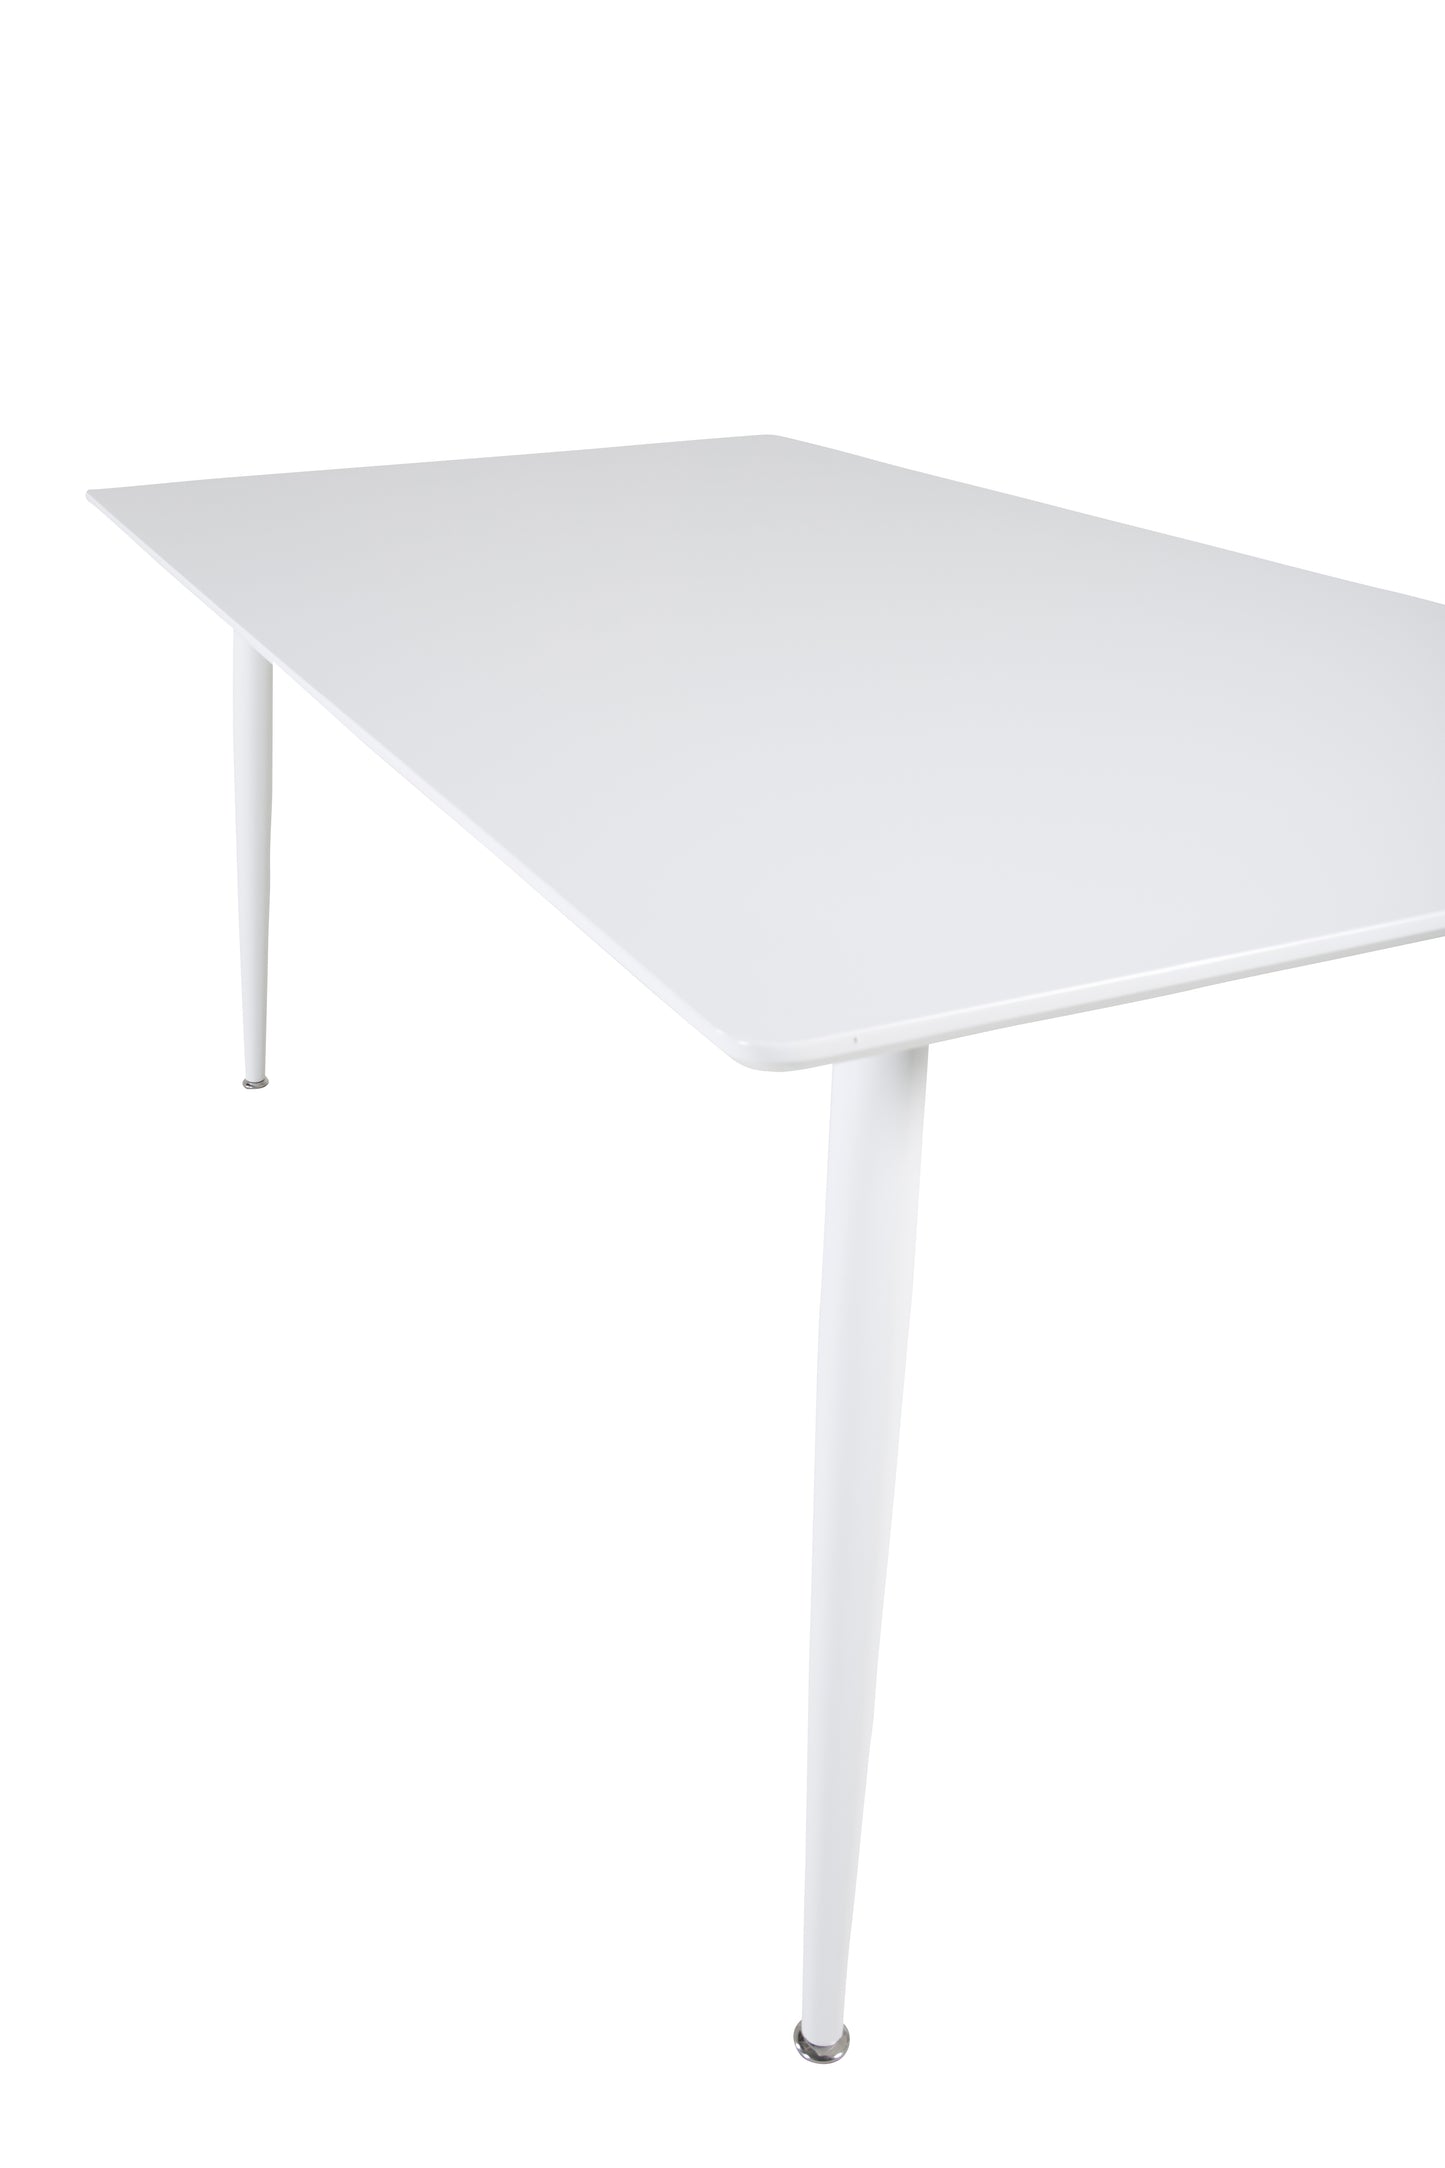 Venture-Design | Polar Esstisch 180 cm - Weiße Platte / Weiße Beine